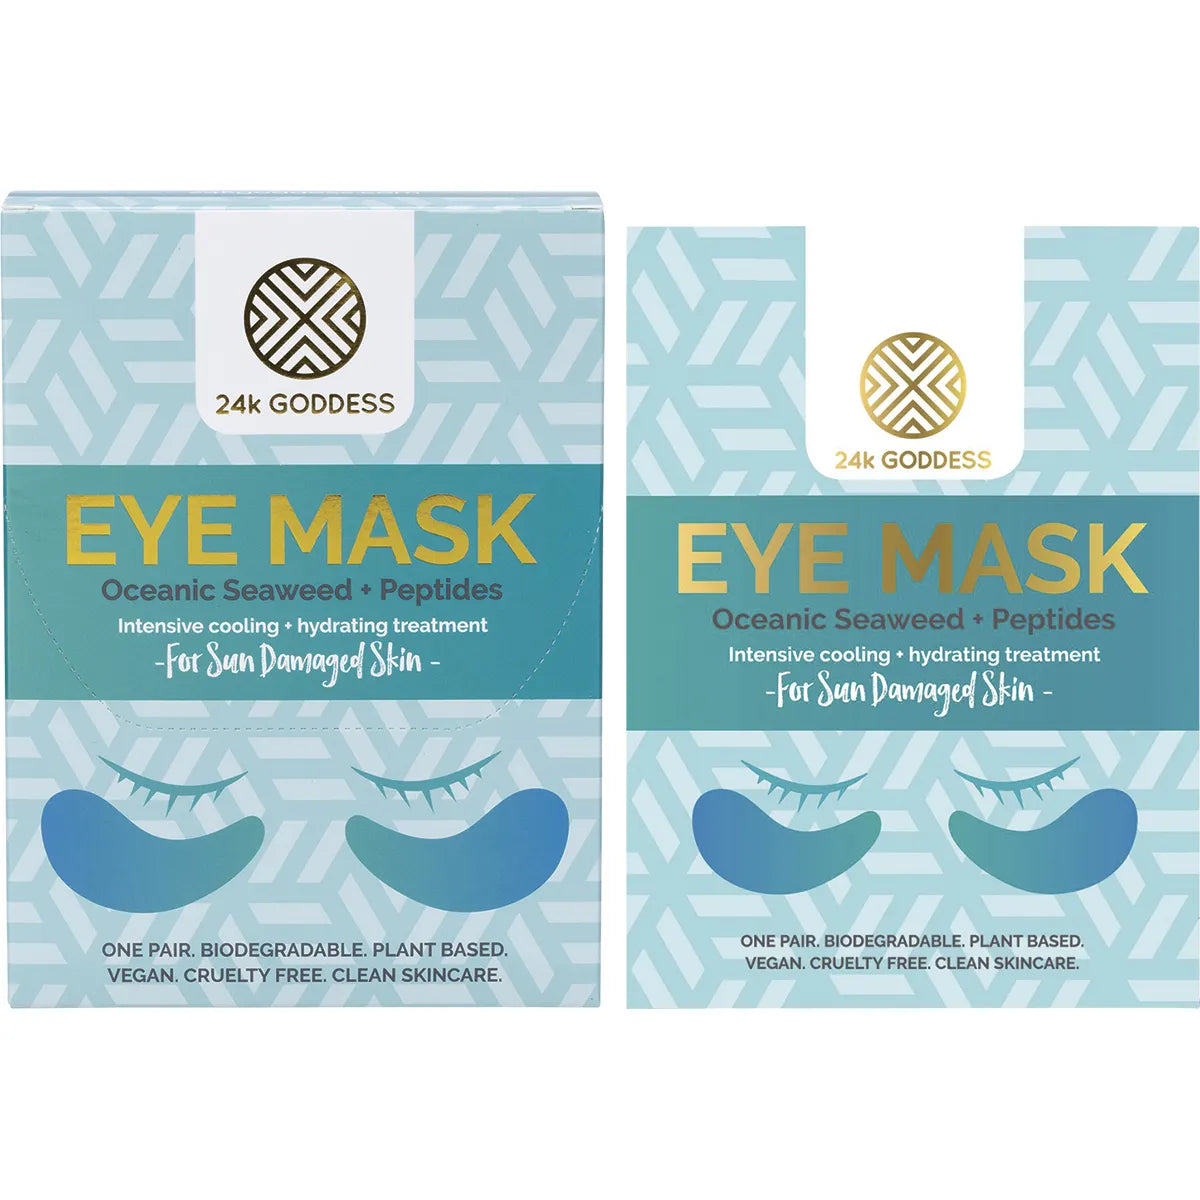 24k Goddess Eye Mask For Sun Damaged Skin (Single Use)